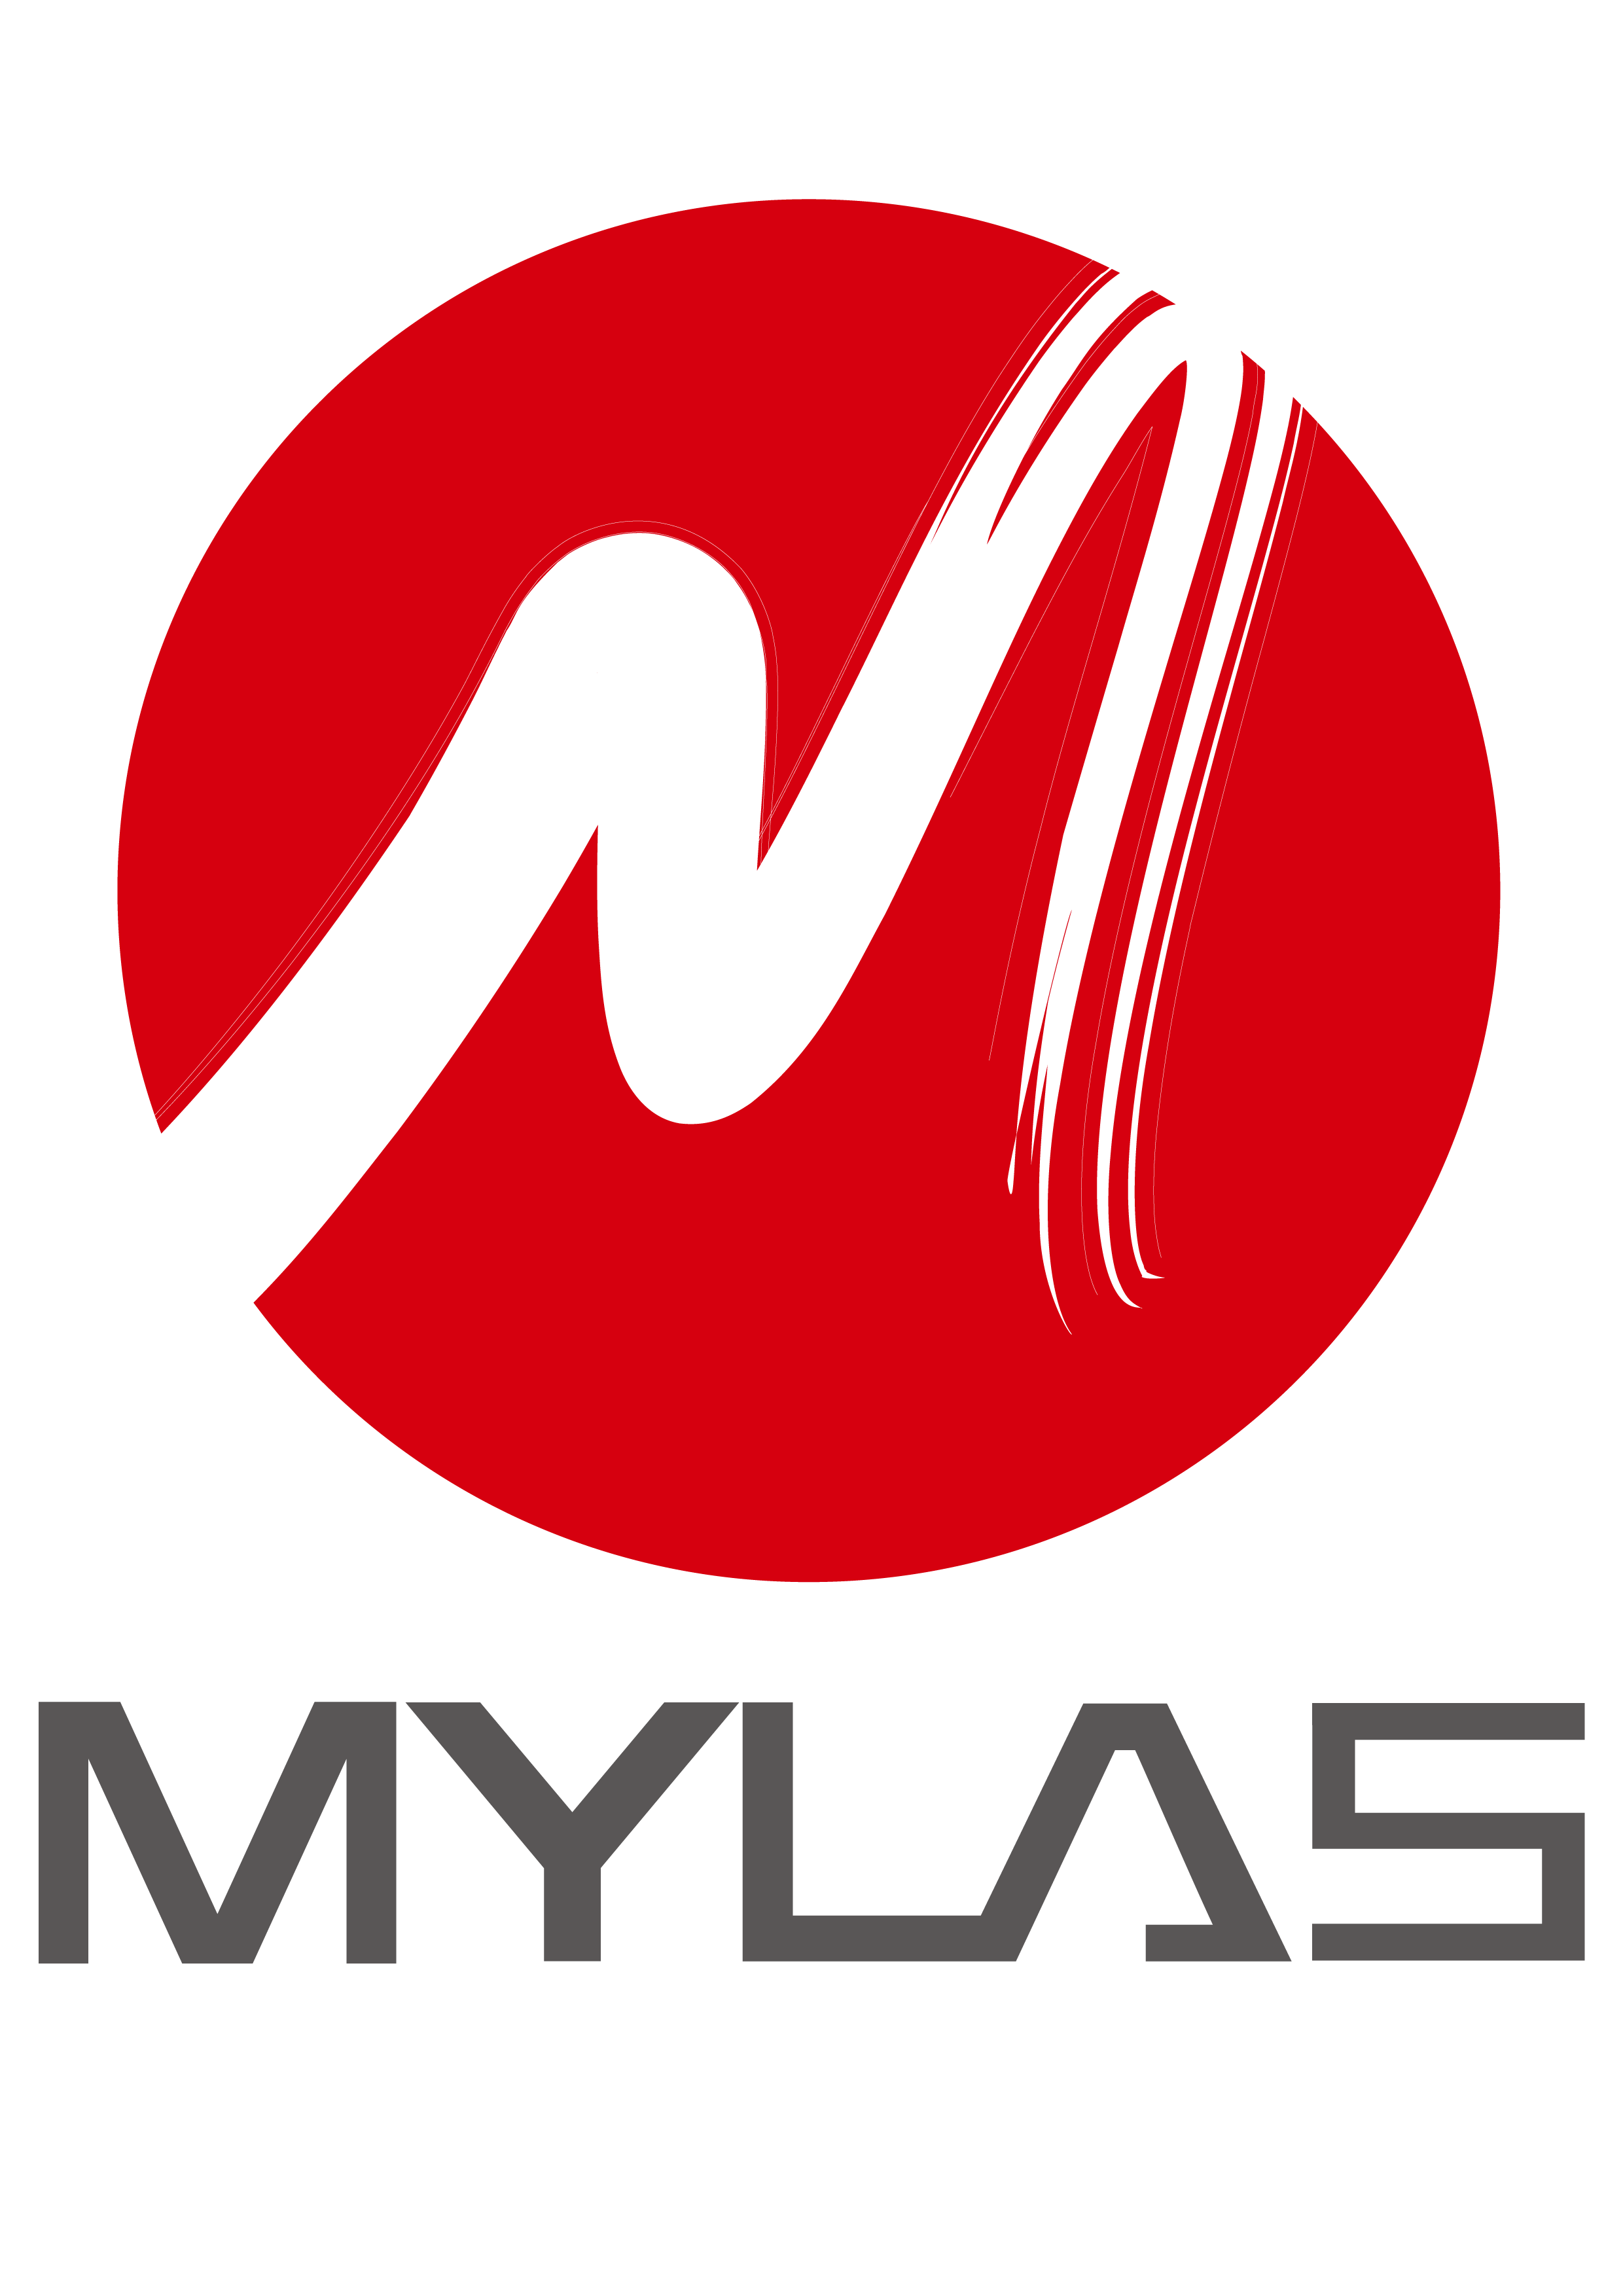 MYLAS MACHINERY CO., LTD.